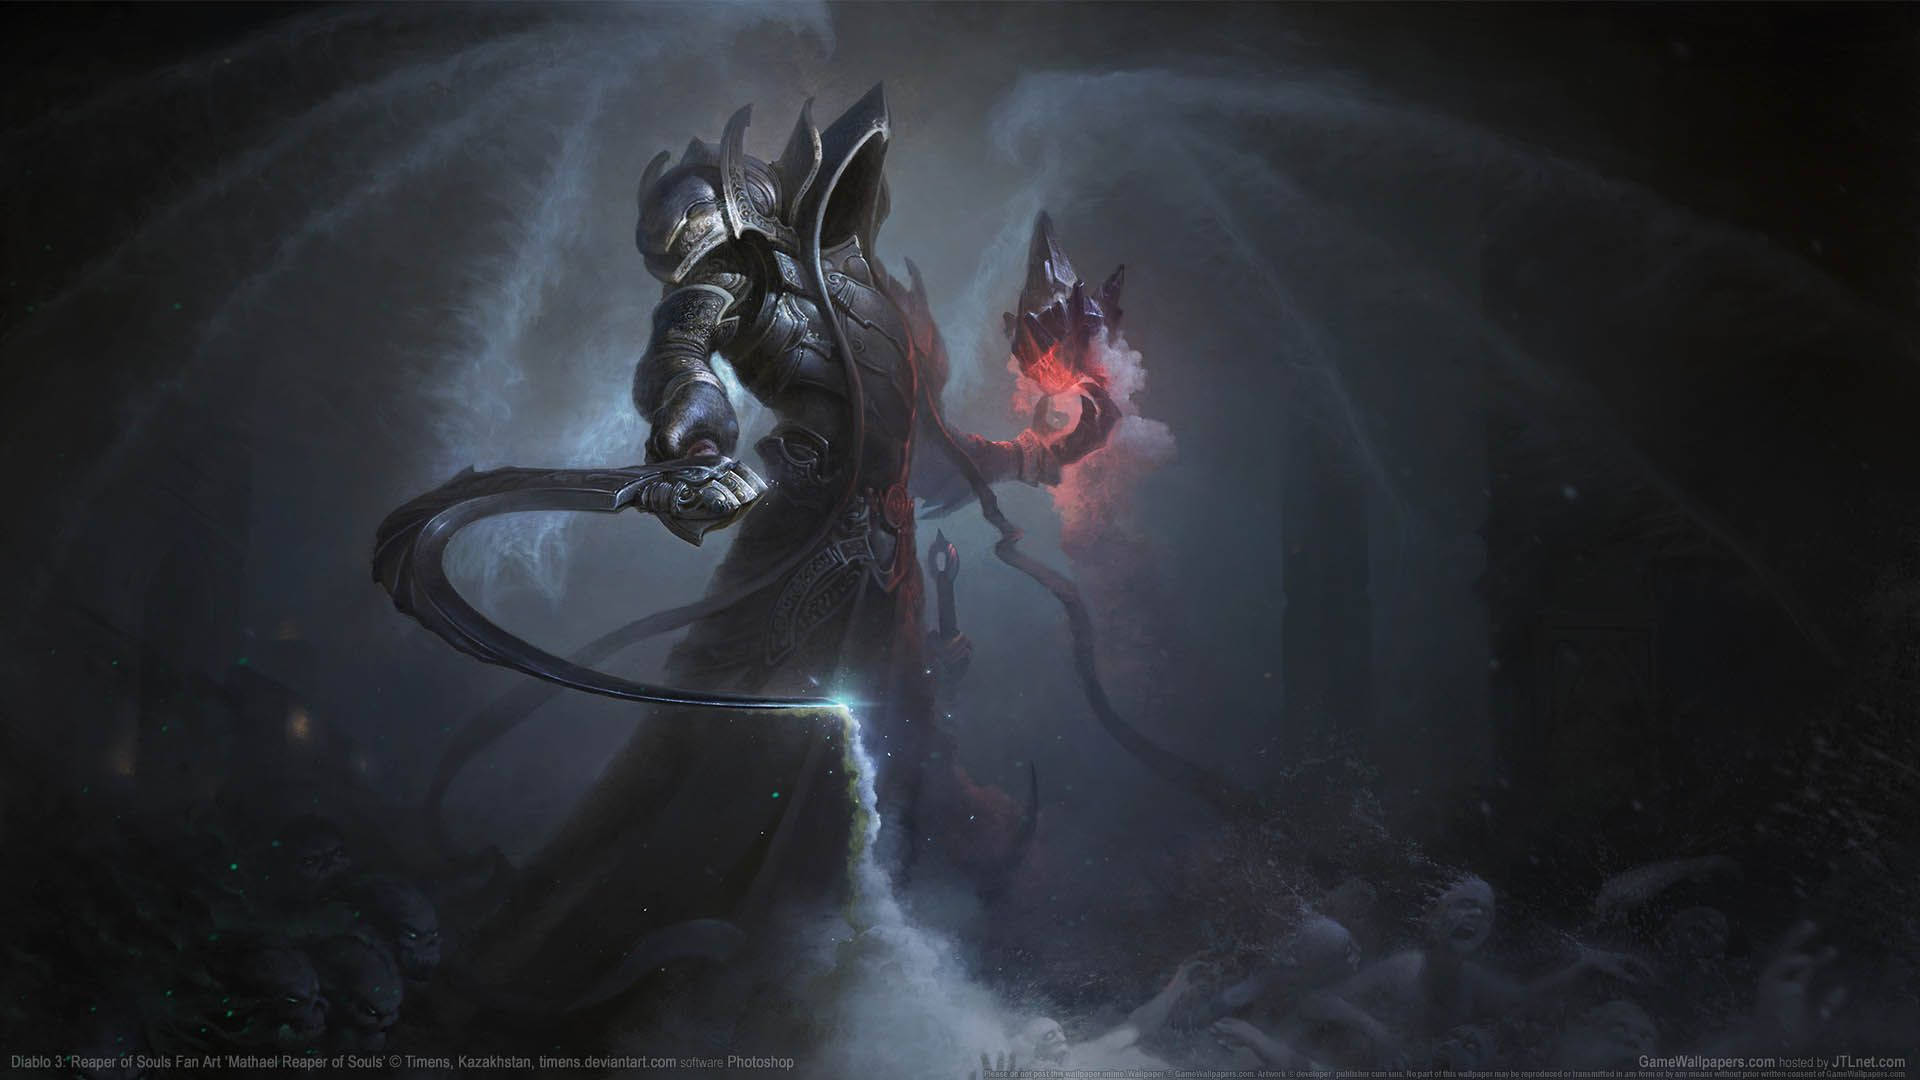 Diablo 3 Reaper of Souls Fan Art Wallpaper